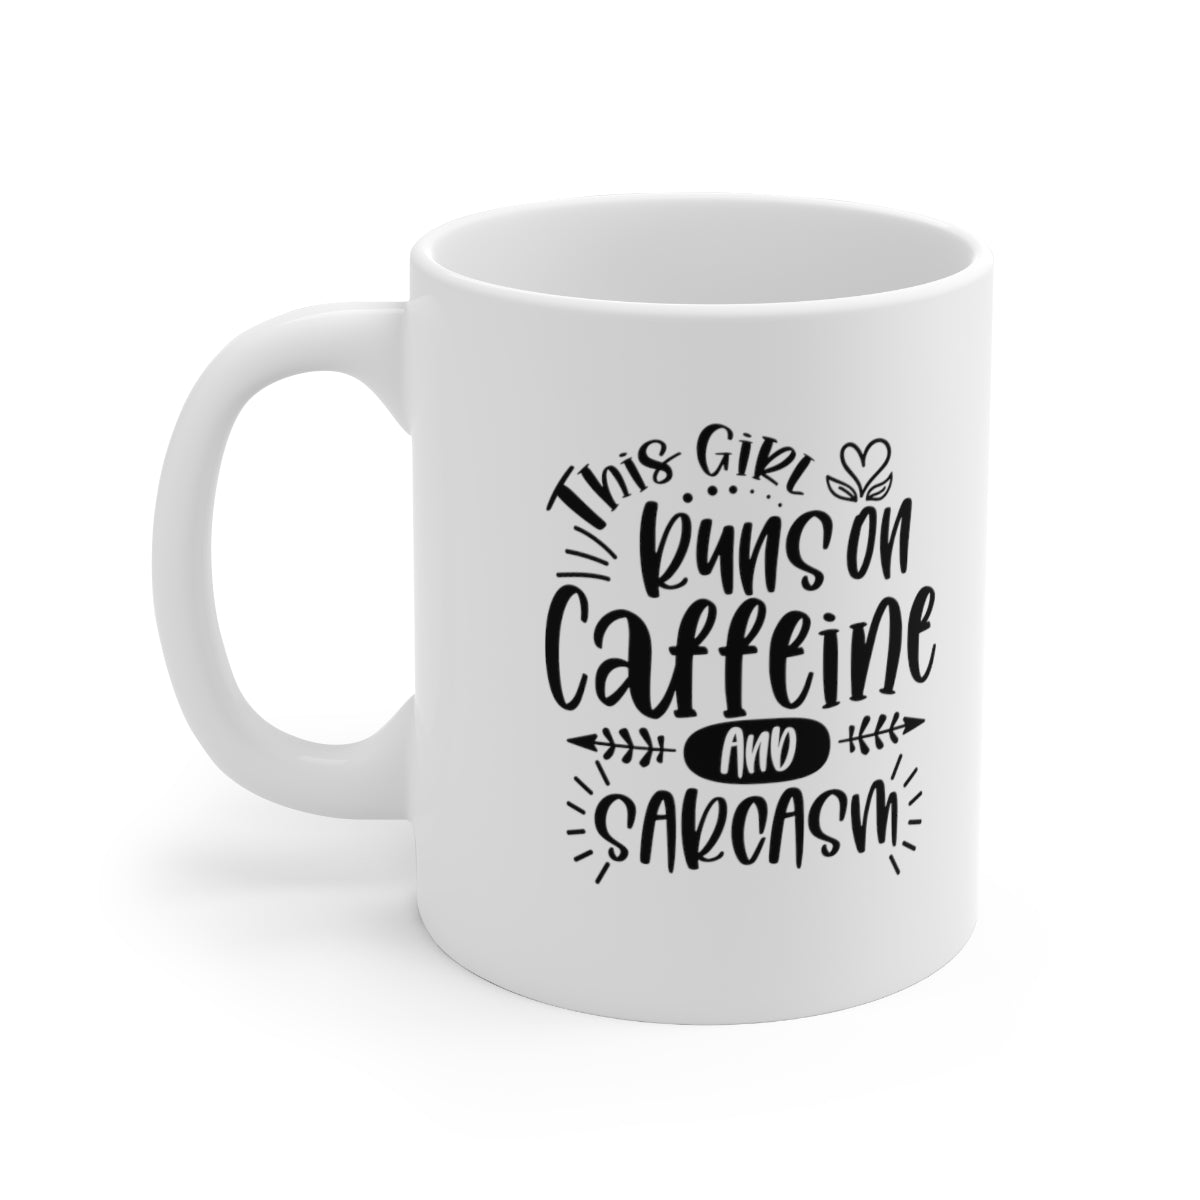 Caffeine and Sarcasm Ceramic Mug